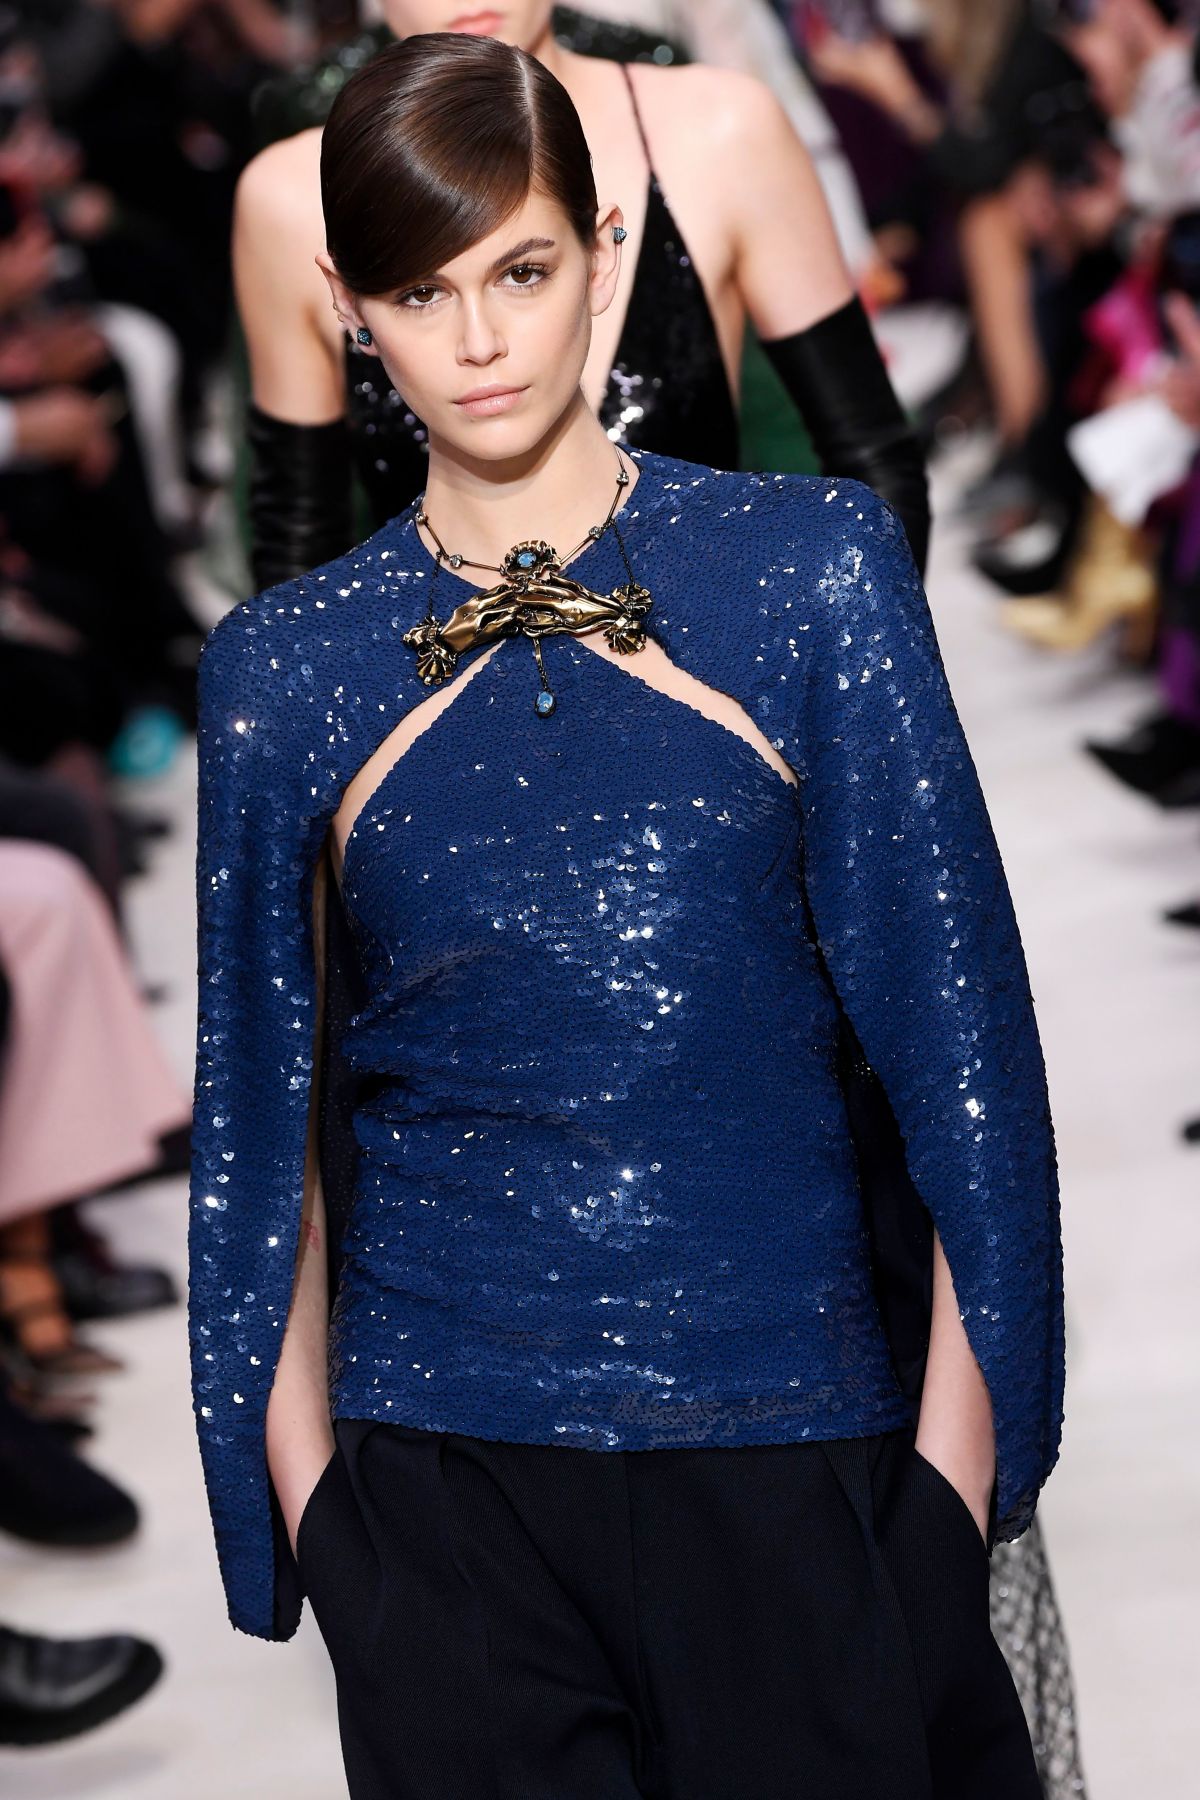 KAIA GERBER at Valentino Runway Show at Paris Fashion Week 03/01/2020 ...